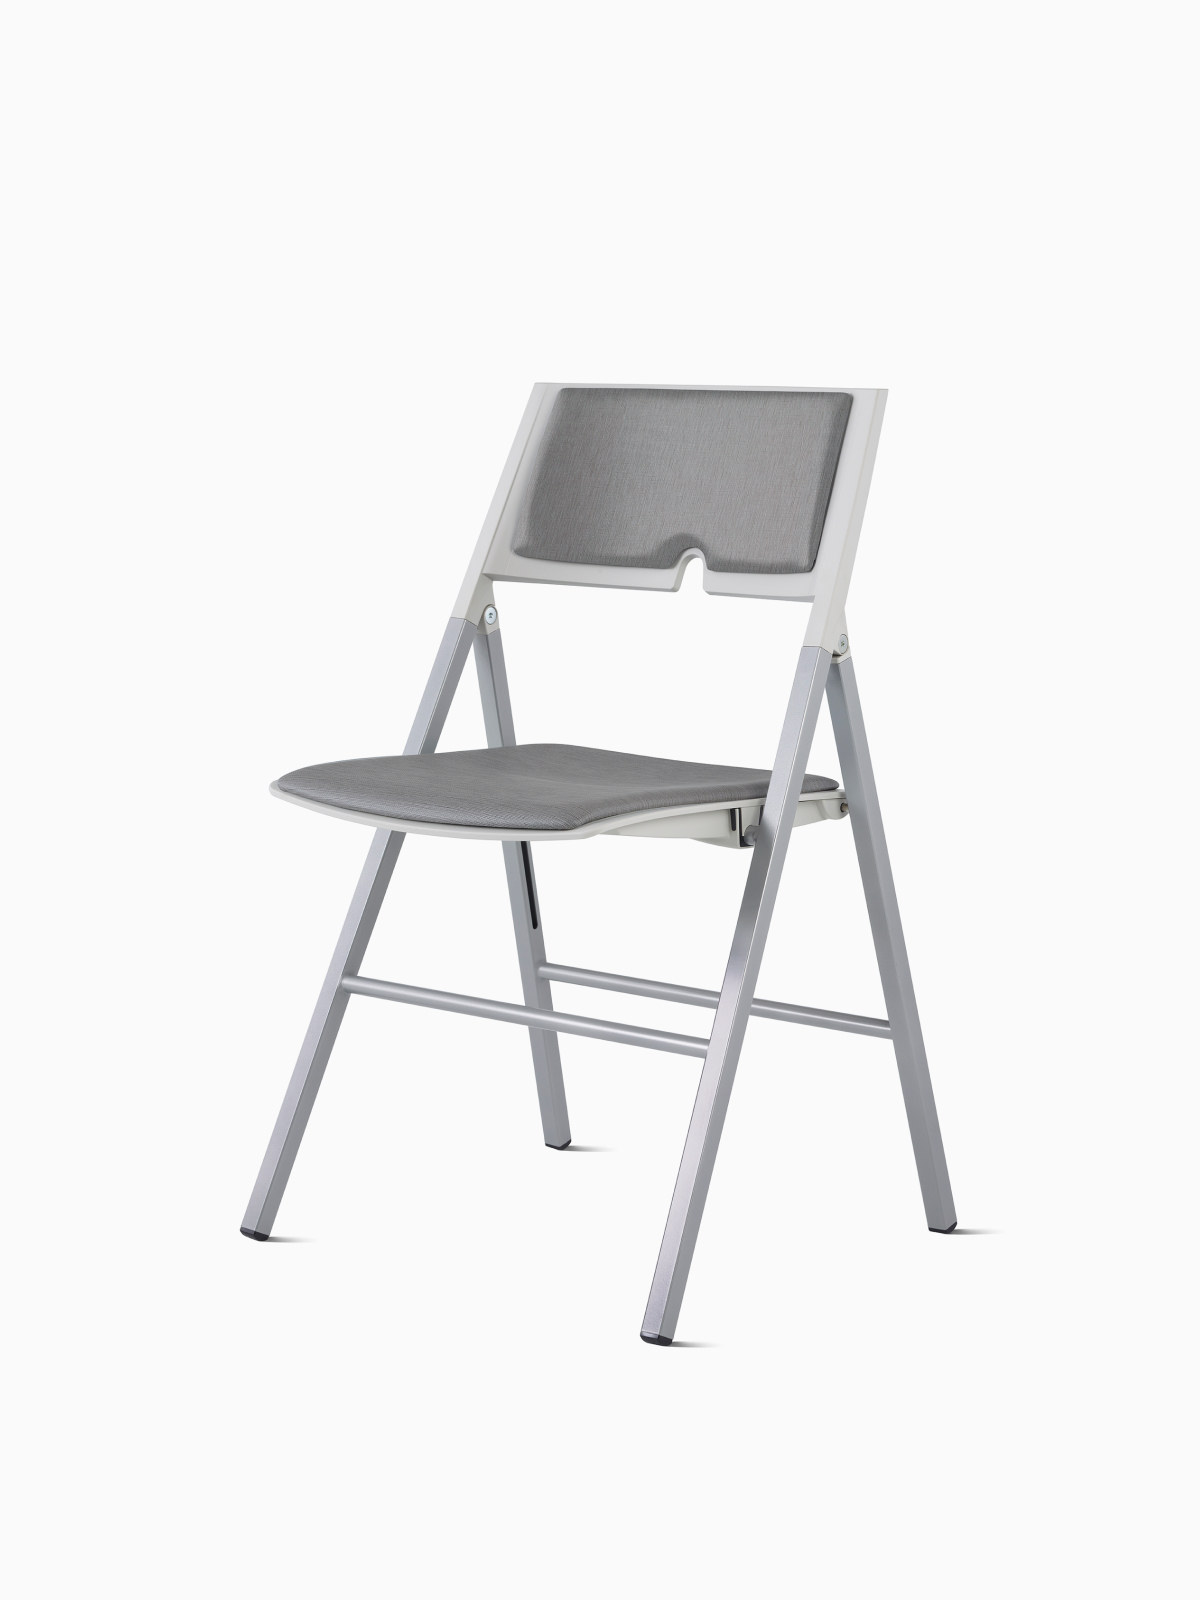 Axa Folding Chair